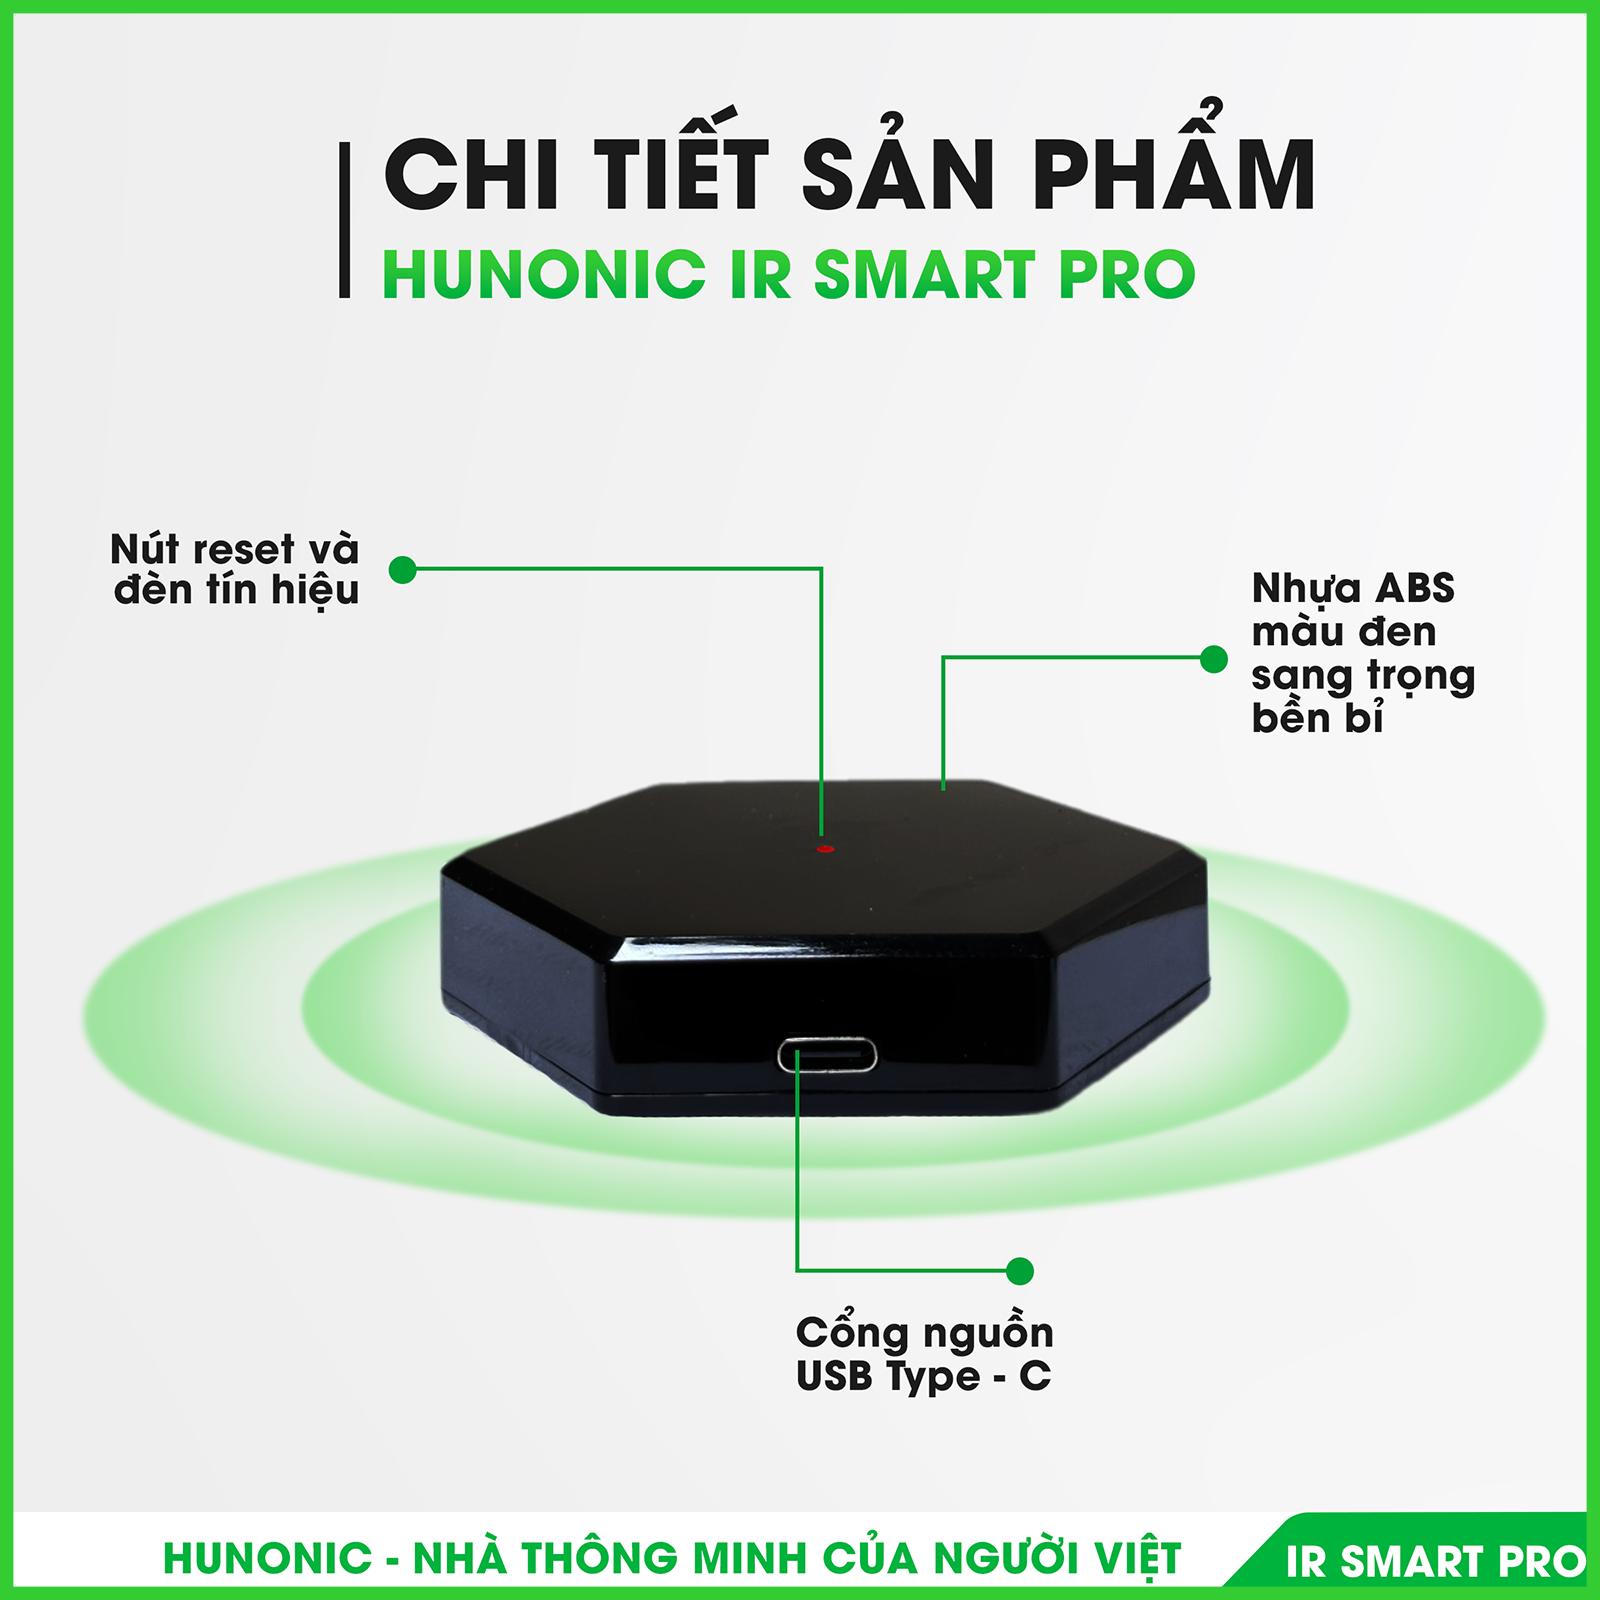 Bộ điều khiển Tivi, Điều Hoà qua điện thoại Hunonic IR Smart Pro